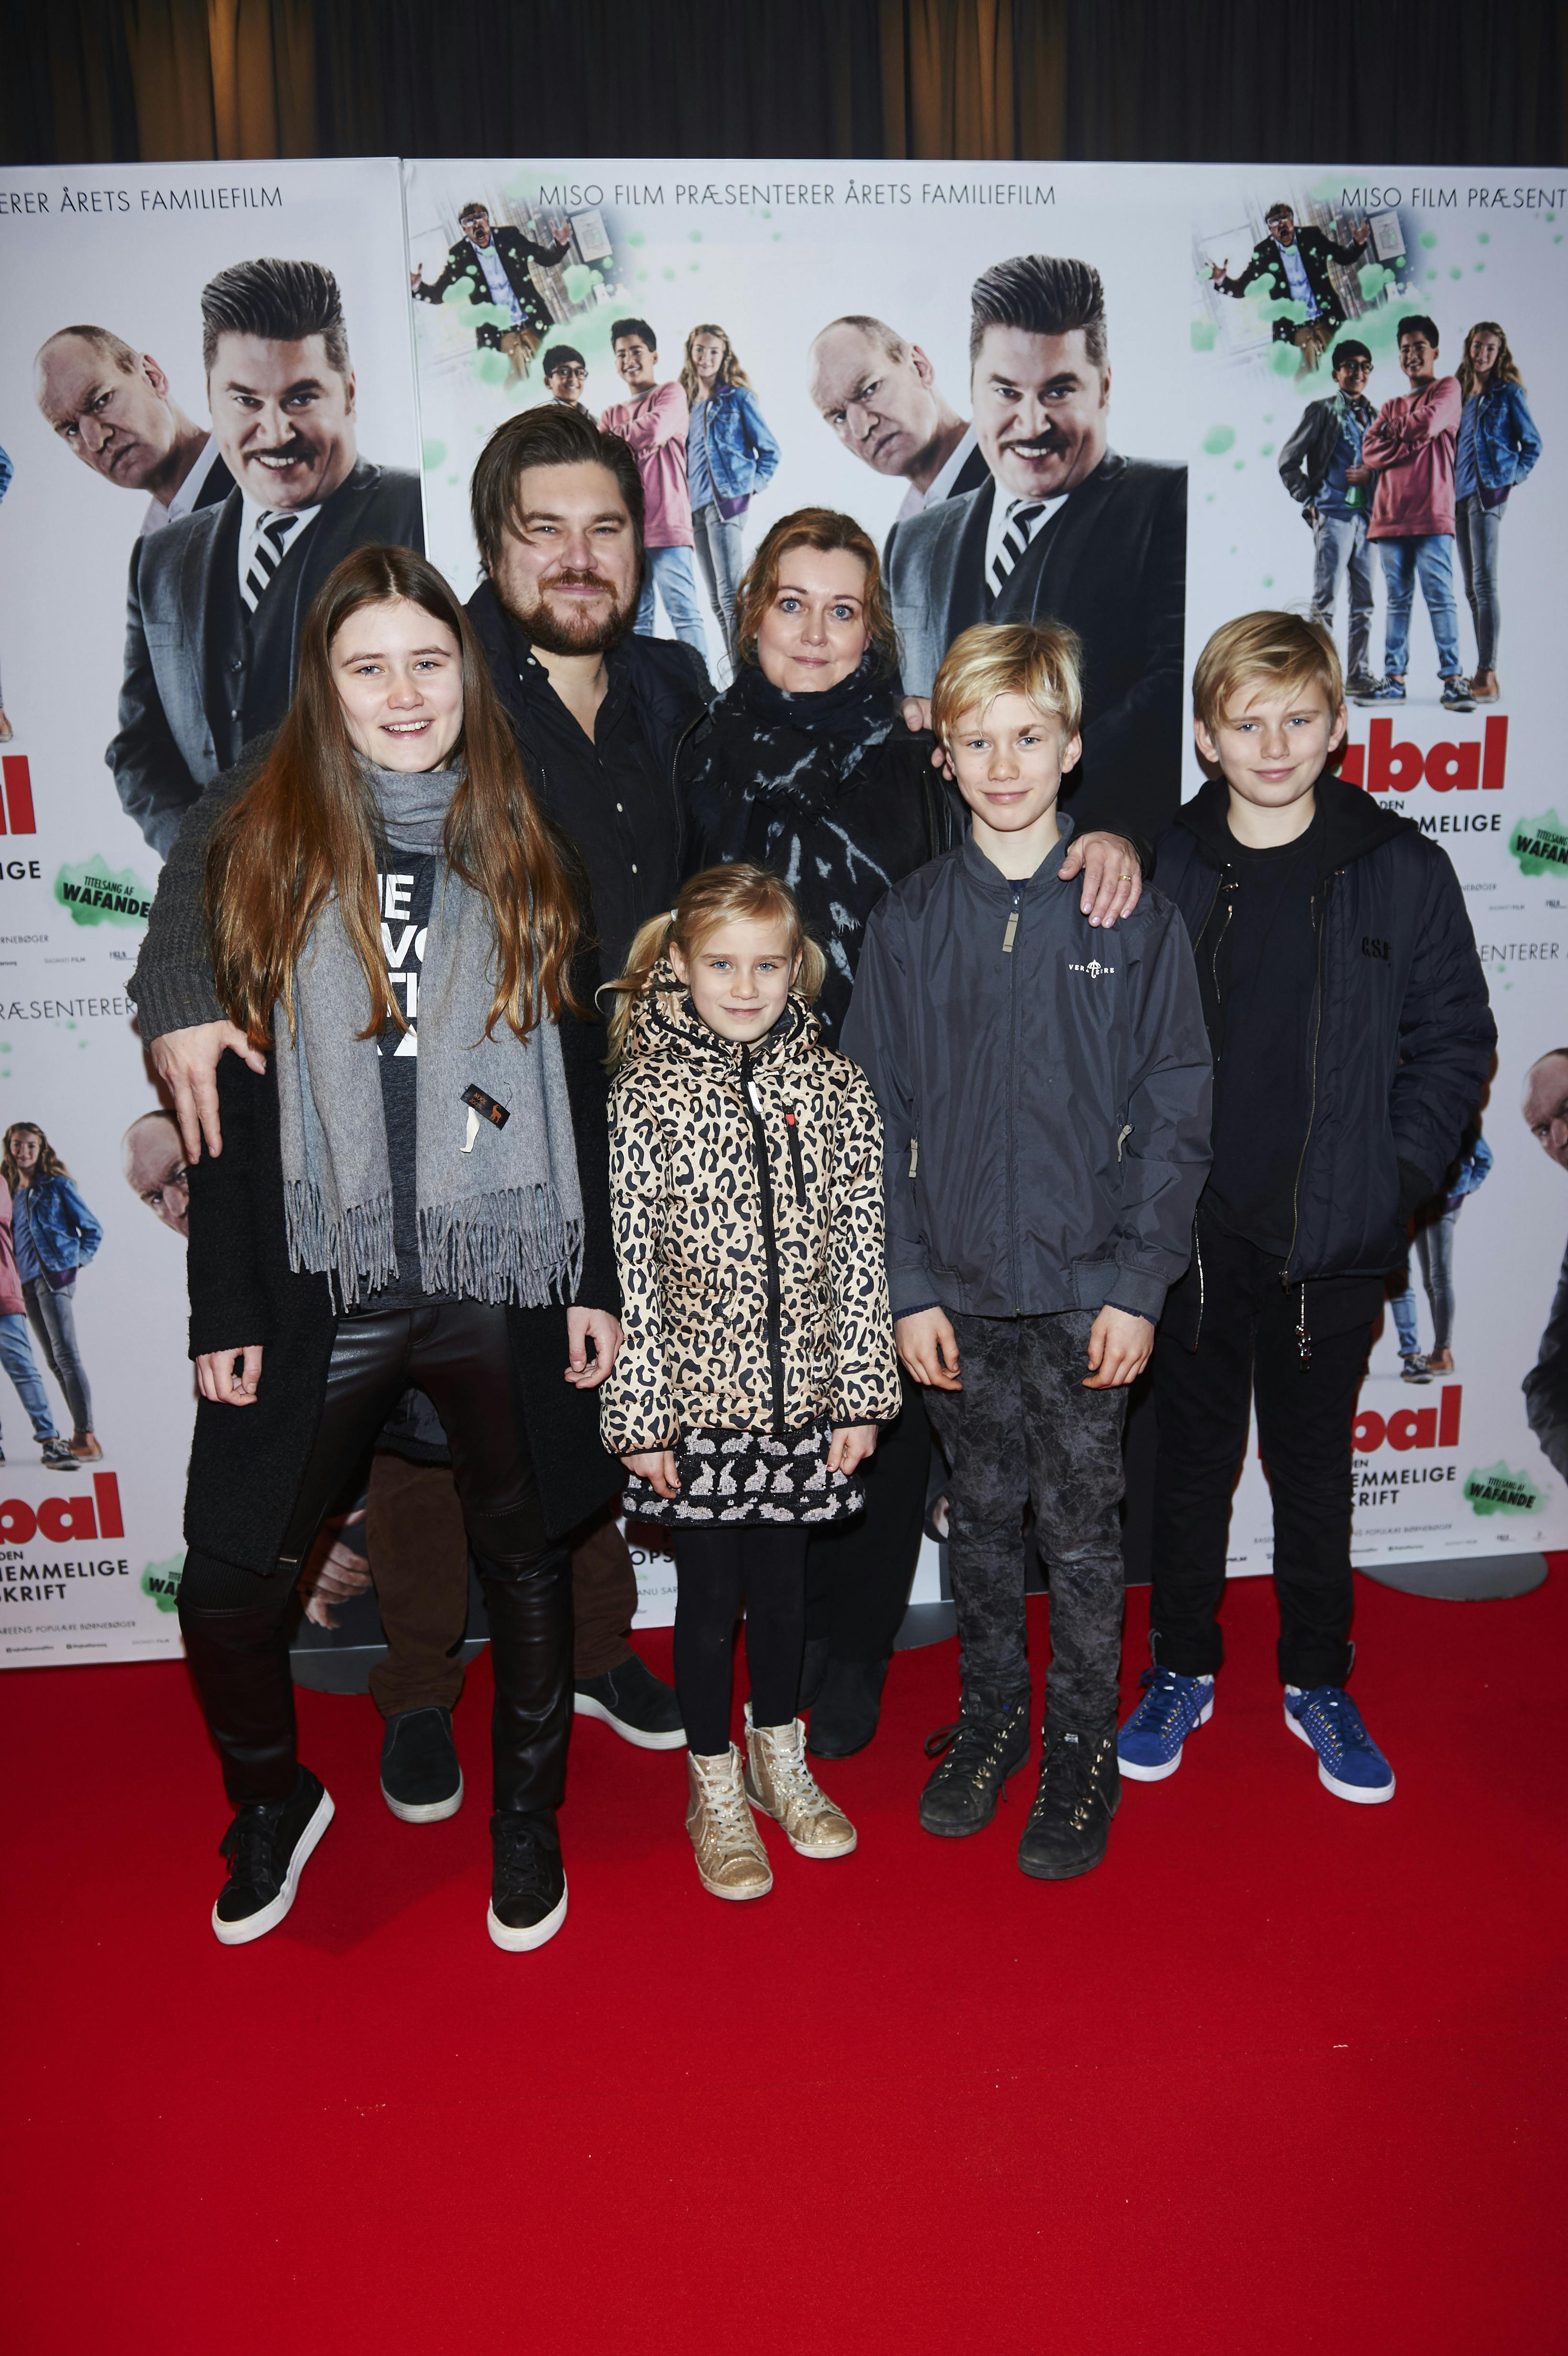 Premiere på den danske film "Iqbal og den hemmelige opskrift" i Imperial i København. Rasmus Bjerg med sin kone Helle og deres børn. 